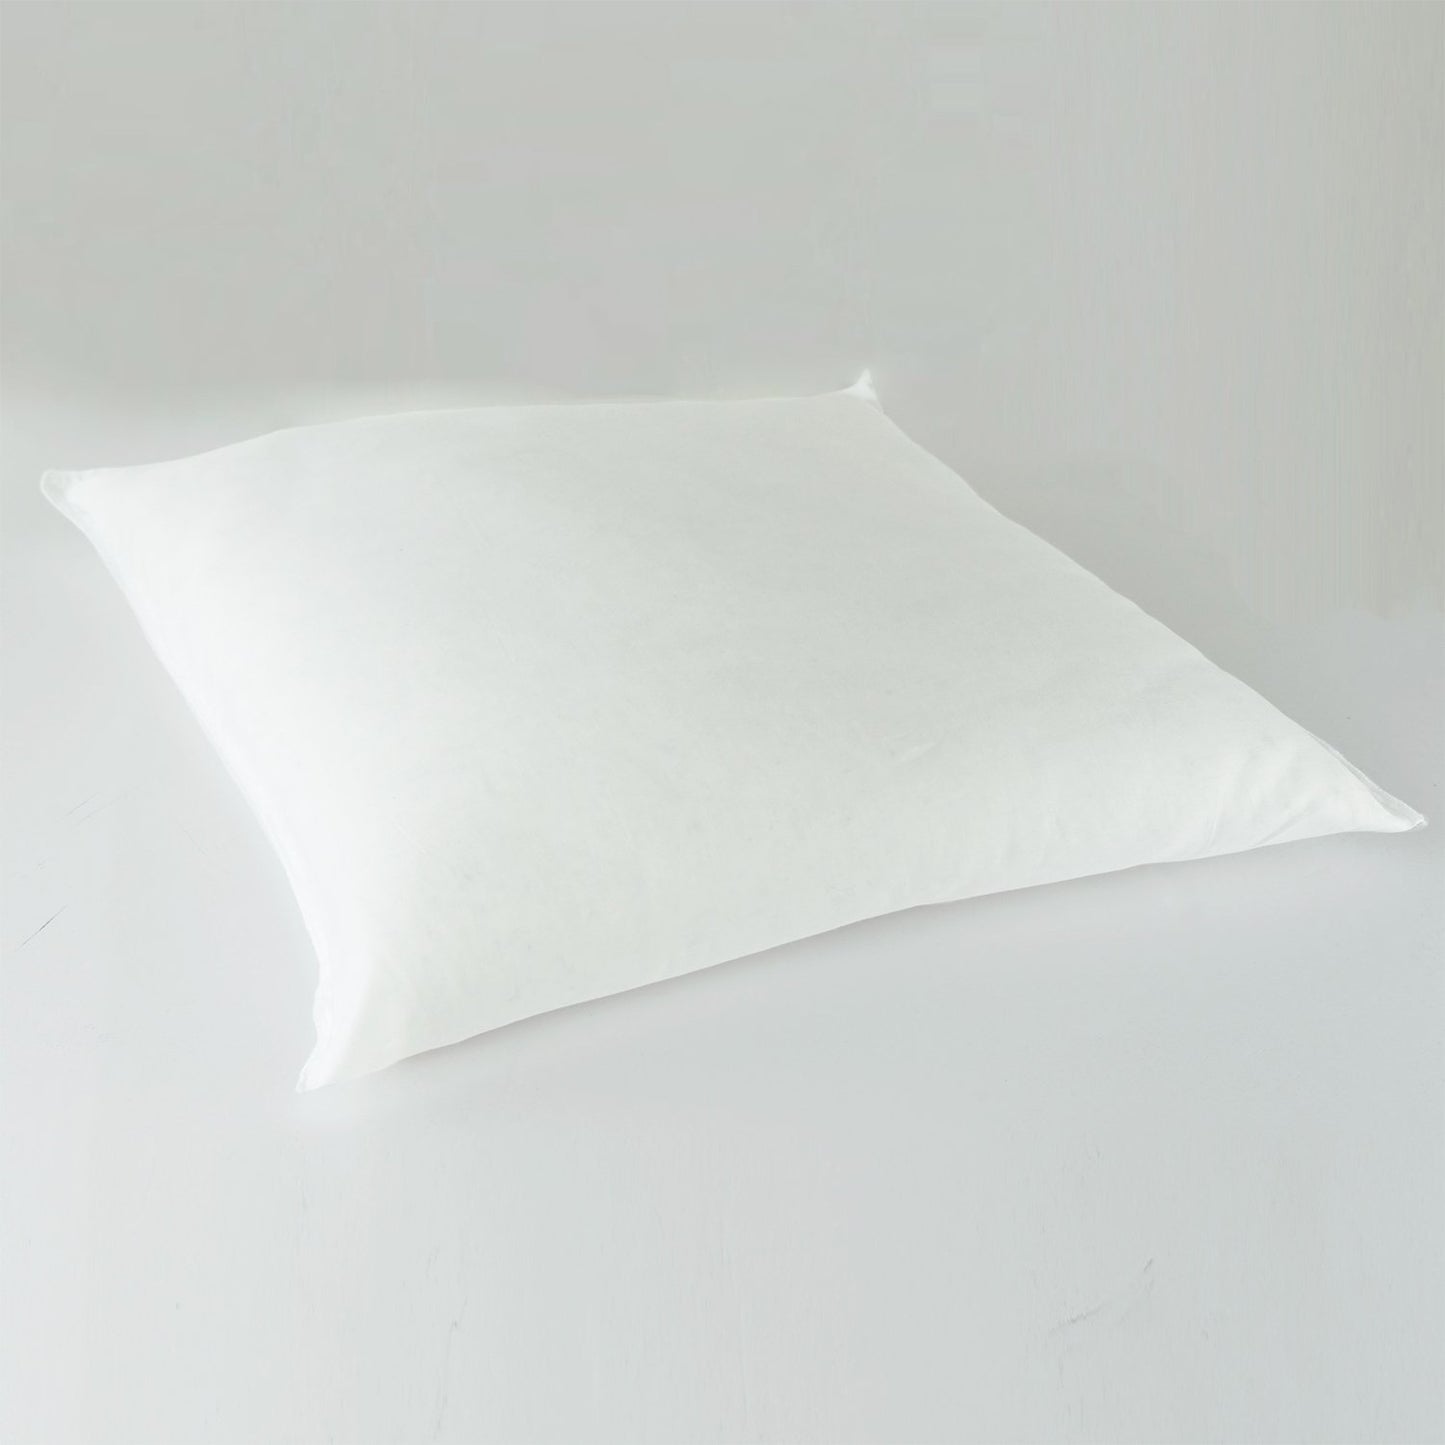 J-Life Kanji Black Zabuton Floor Pillow_Pillows & Shams_Zabuton Floor Pillows_100% Cotton_Reversible_Handmade